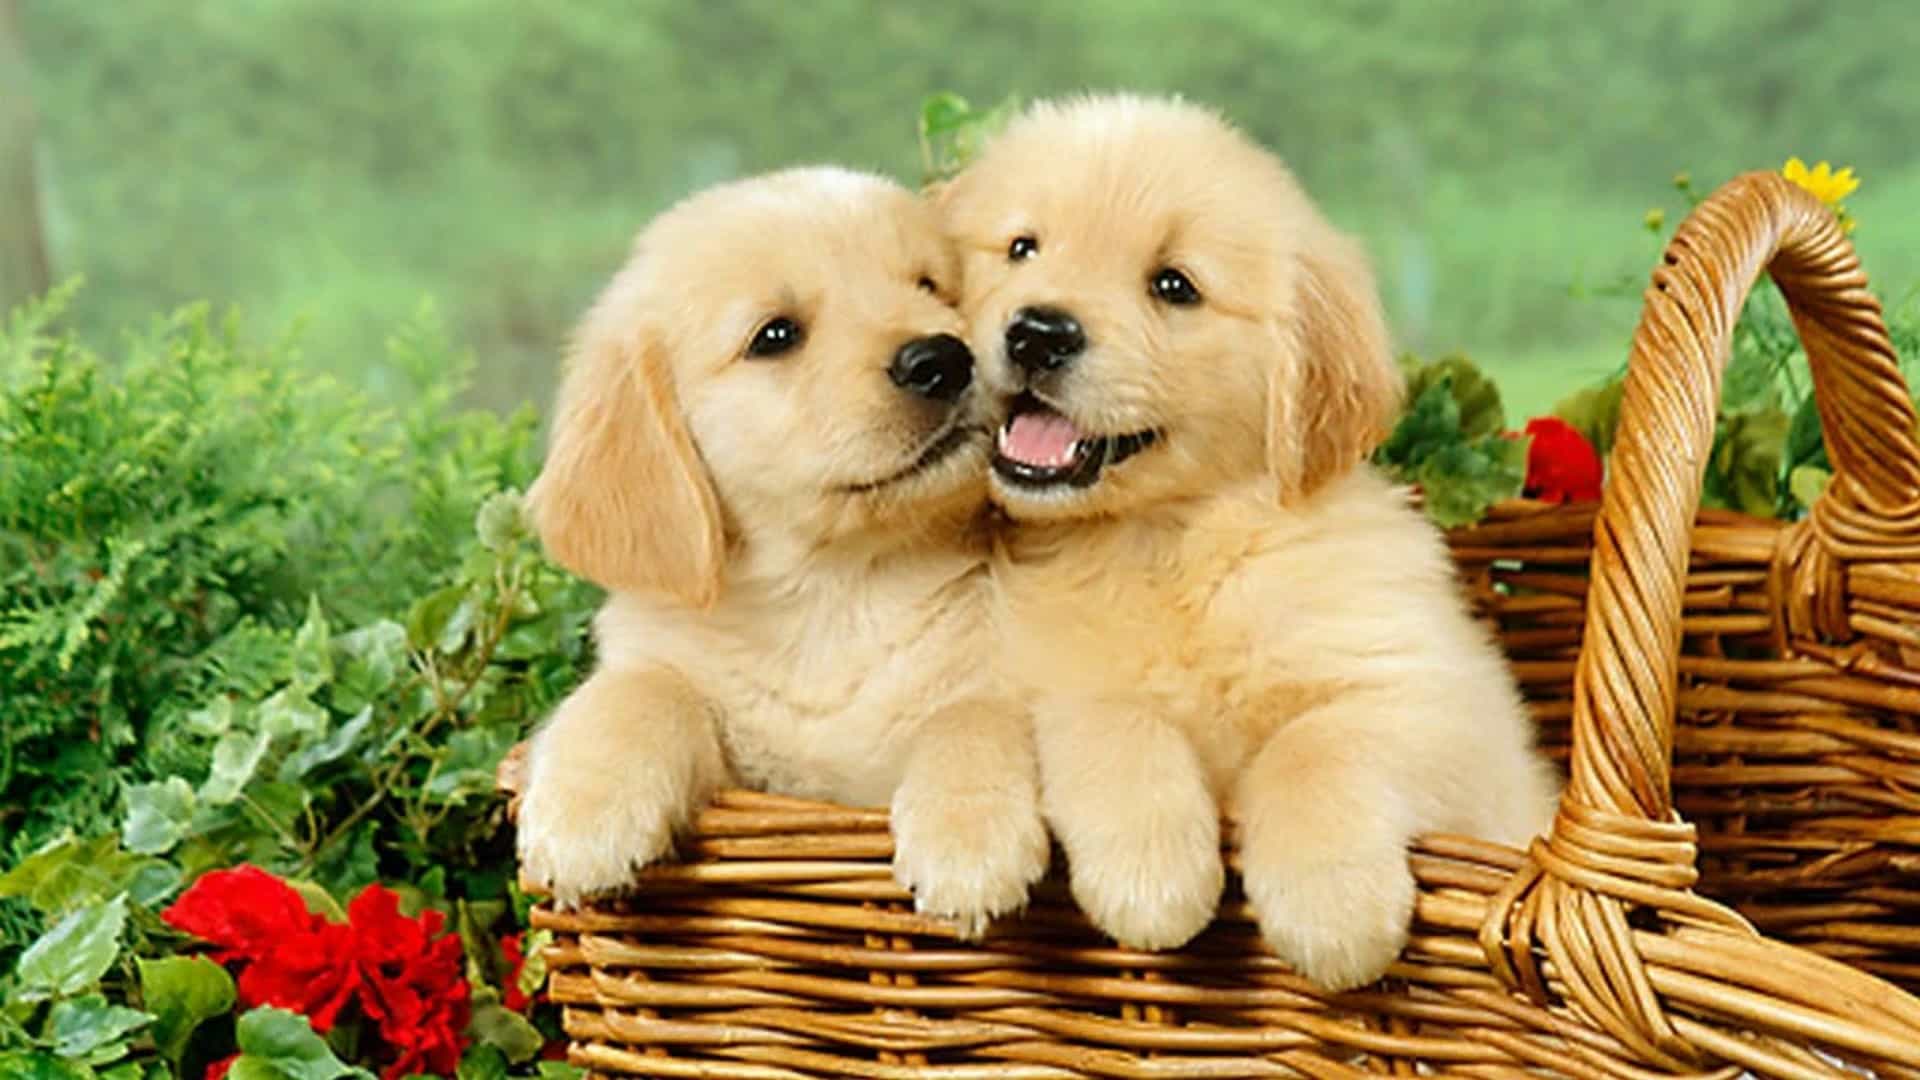 Nếu bạn thích những chú chó đáng yêu, hãy xem hình ảnh này! Chắc chắn rằng nó sẽ mang lại cho bạn niềm vui và làm tan chảy trái tim của bạn.